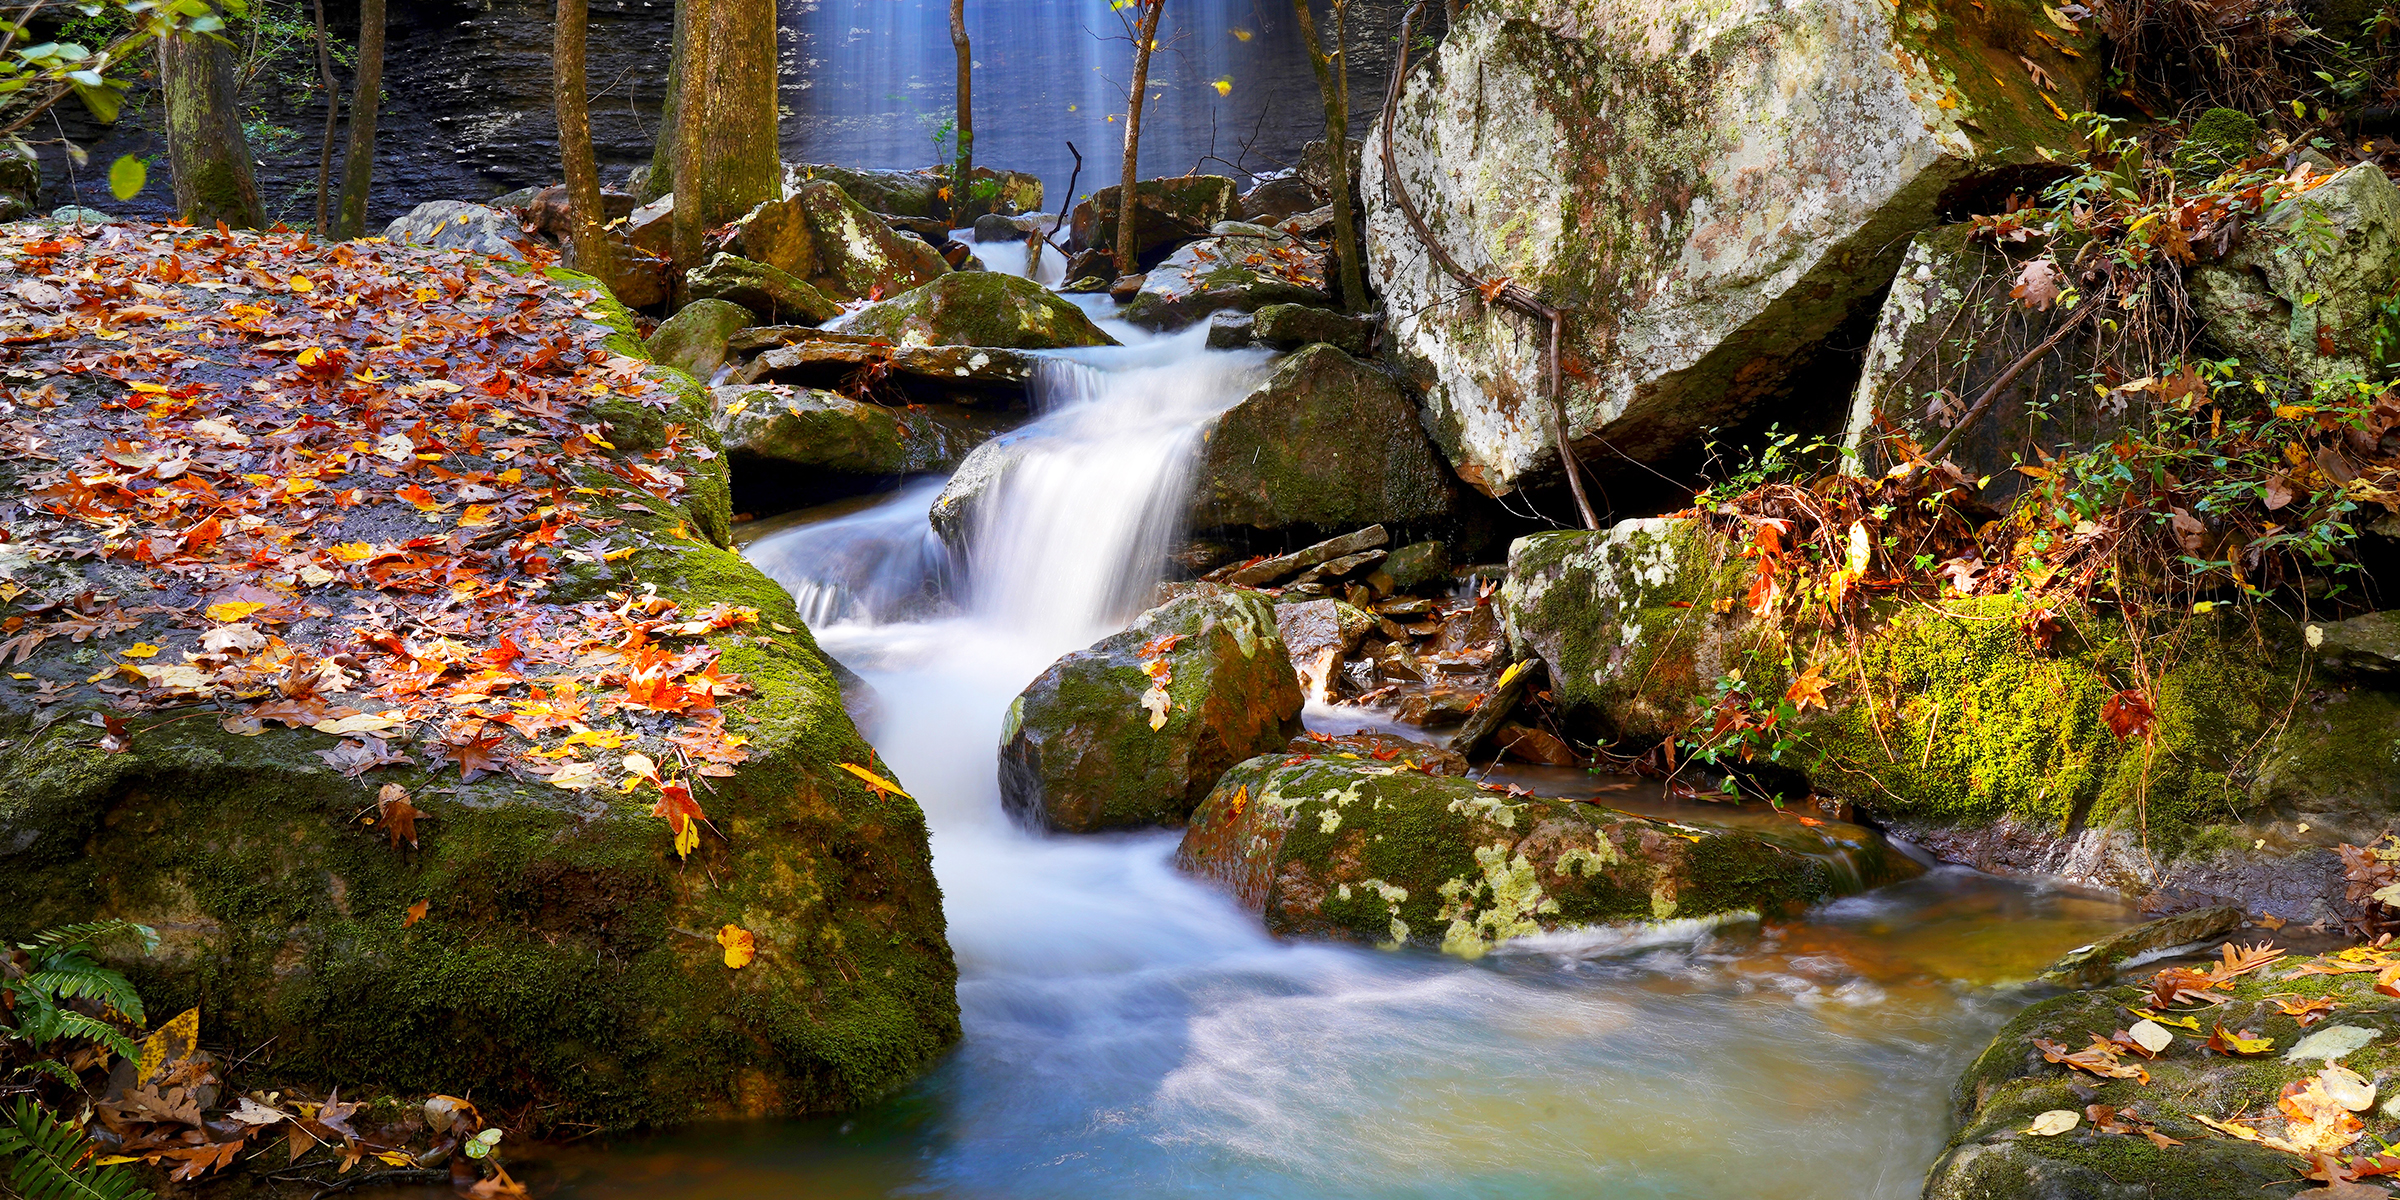 A waterfall at Bridal Veil Falls, Arkansas | Source: Getty Images